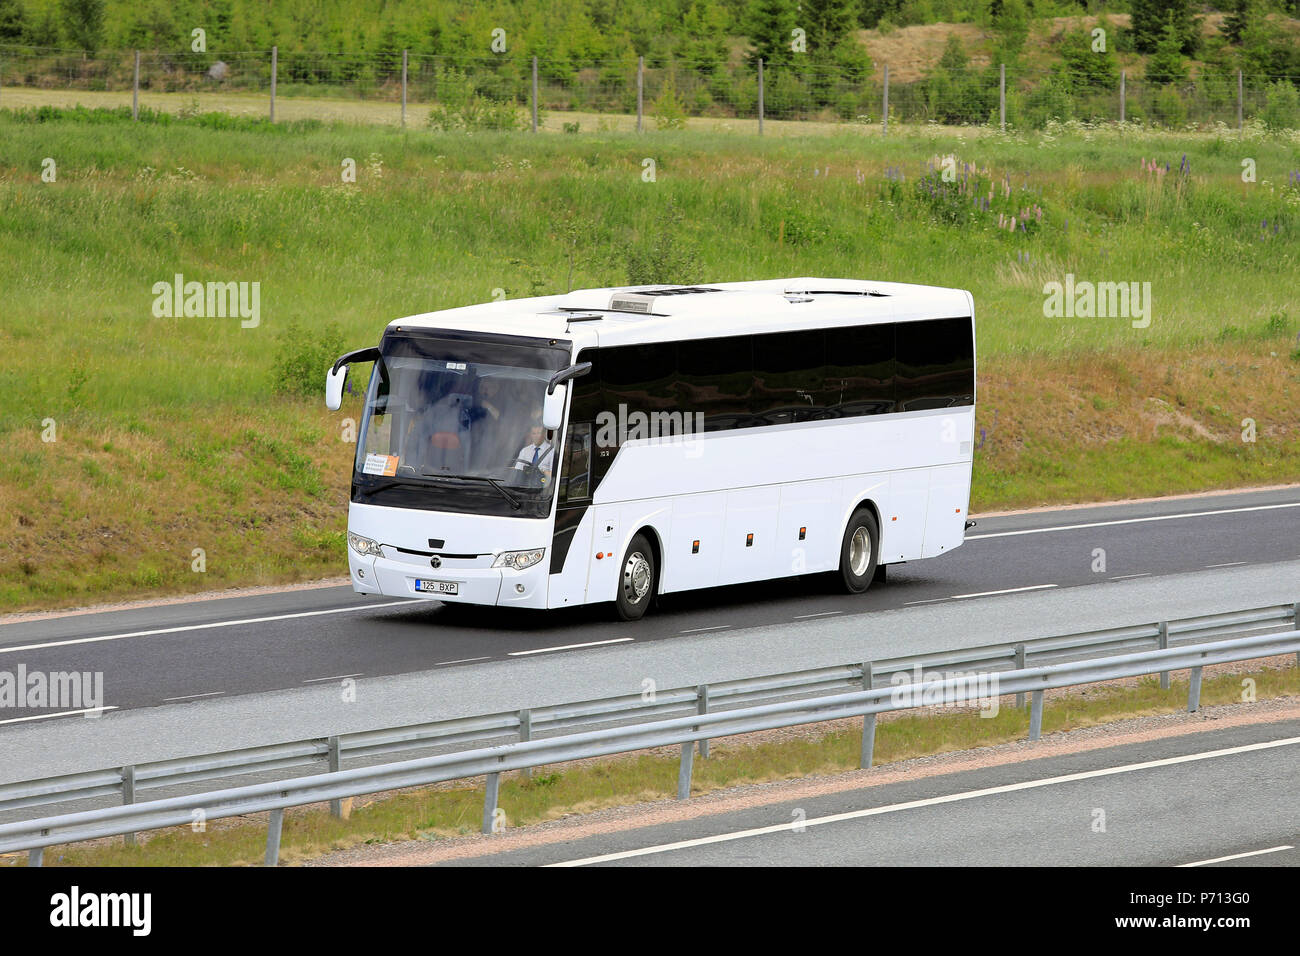 Weiß Temsa HD 12 Bus Bus bringt Passagiere an der Autobahn an einem sonnigen Tag im Sommer. Salo, Finnland - 9. Juni 2018. Stockfoto